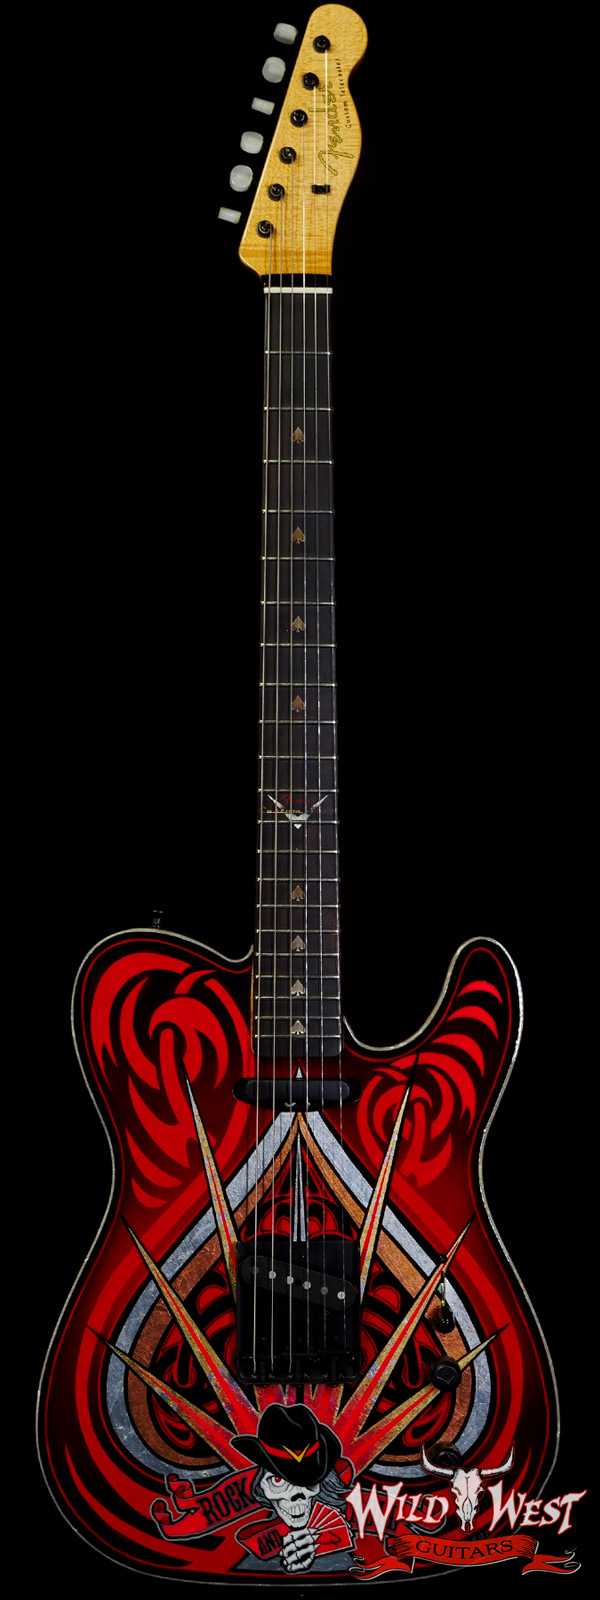 2015 NAMM Fender Custom Shop John Cruz Masterbuilt Ace Of Spades Telecaster NOS Gold Leaf & Artwork by Pamelina H.